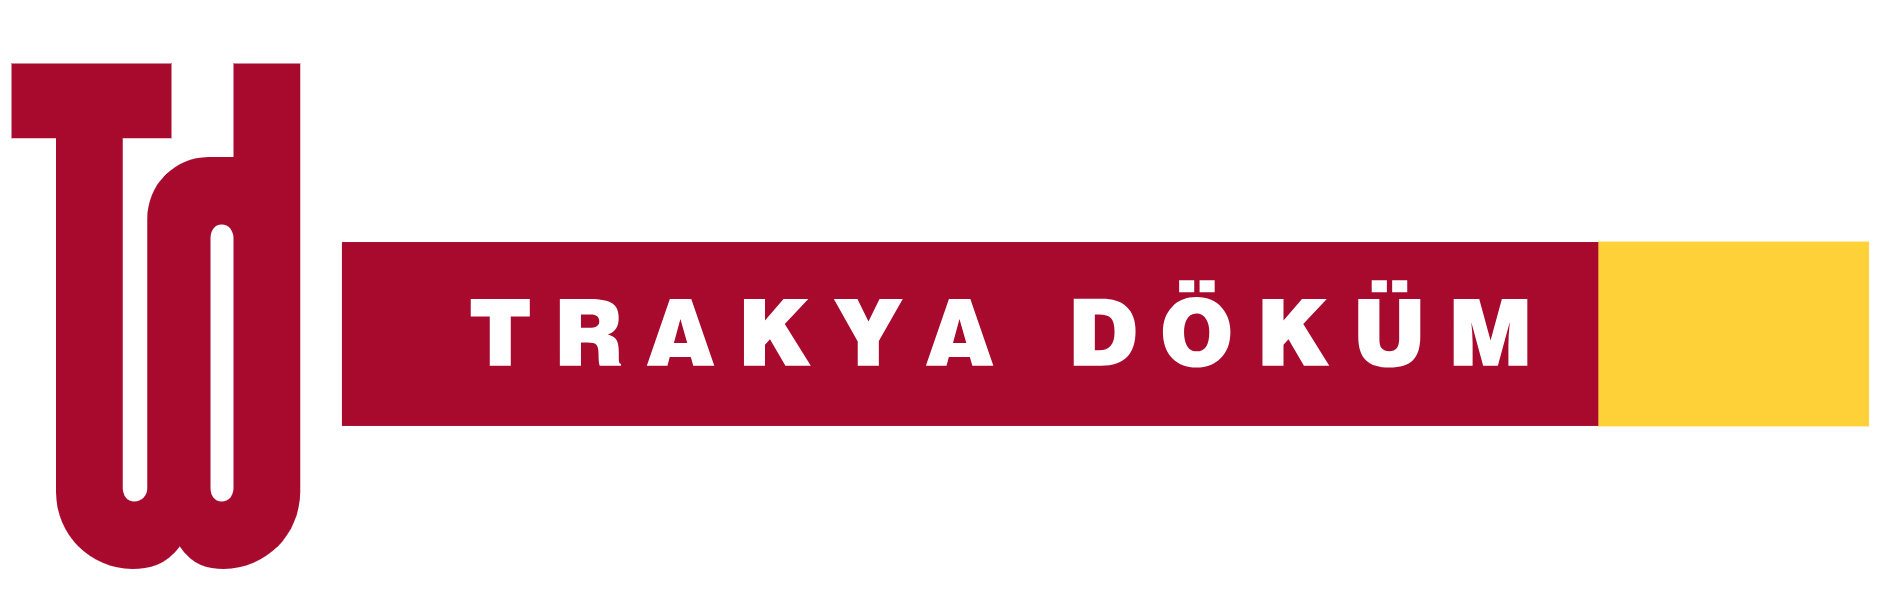 Trakya Döküm'ün logosu, şirket adının baş harfleri "Td" ile koyu kırmızı renkte stilize edilmiş bir tipografi ve şirket adının tamamını içeren koyu kırmızı ve sarı renklerde bir grafik